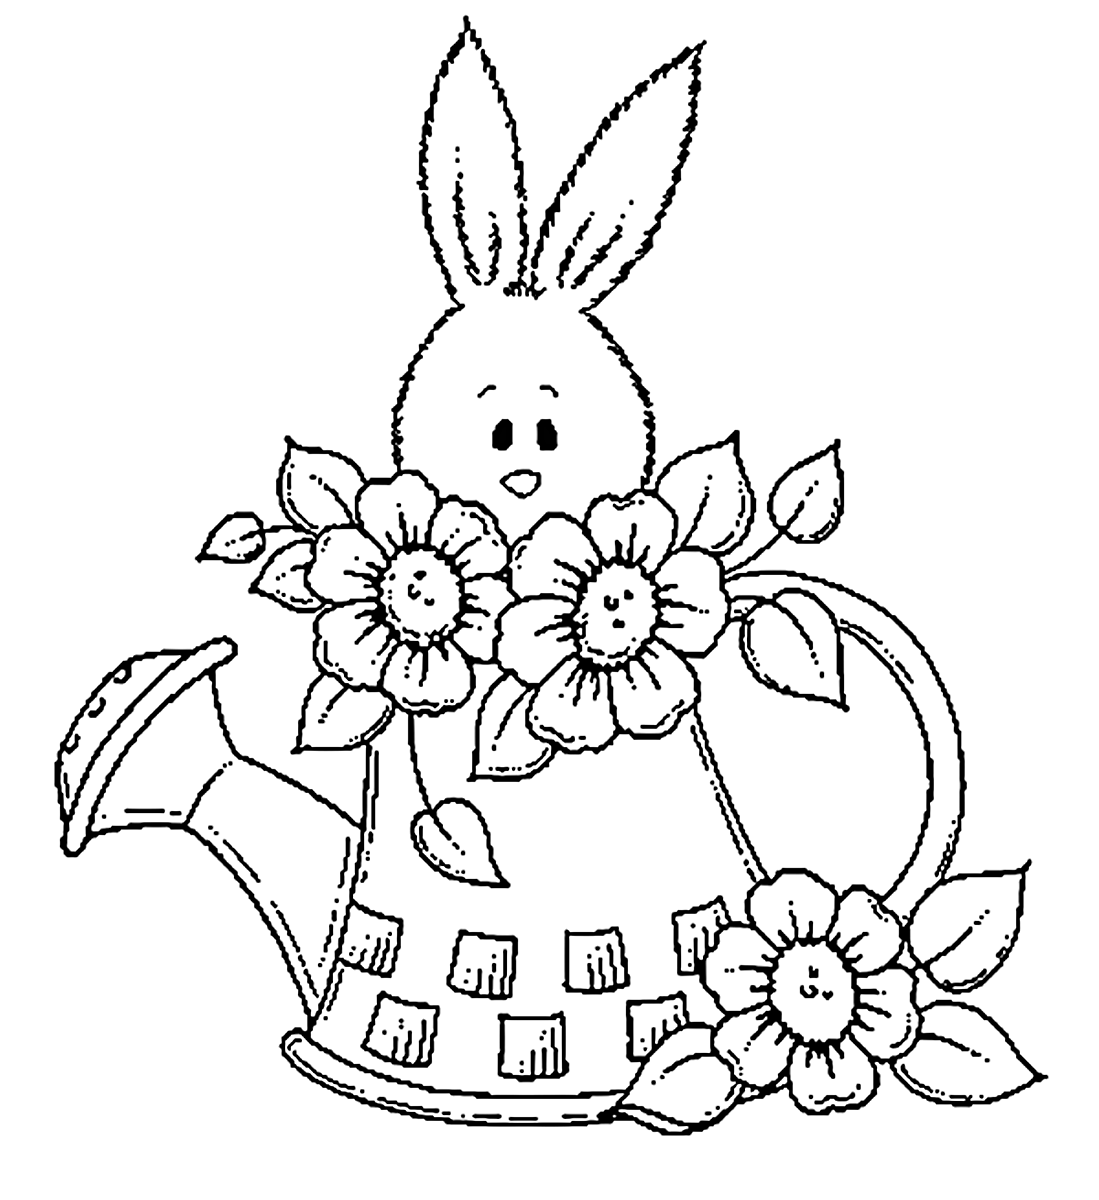 Шаблон пасхального зайца. Раскраски пасхальные для детей. Пасхальный кролик раскраска. Пасхальный зайчик раскраска. Пасхальные зайцы для раскрашивания.